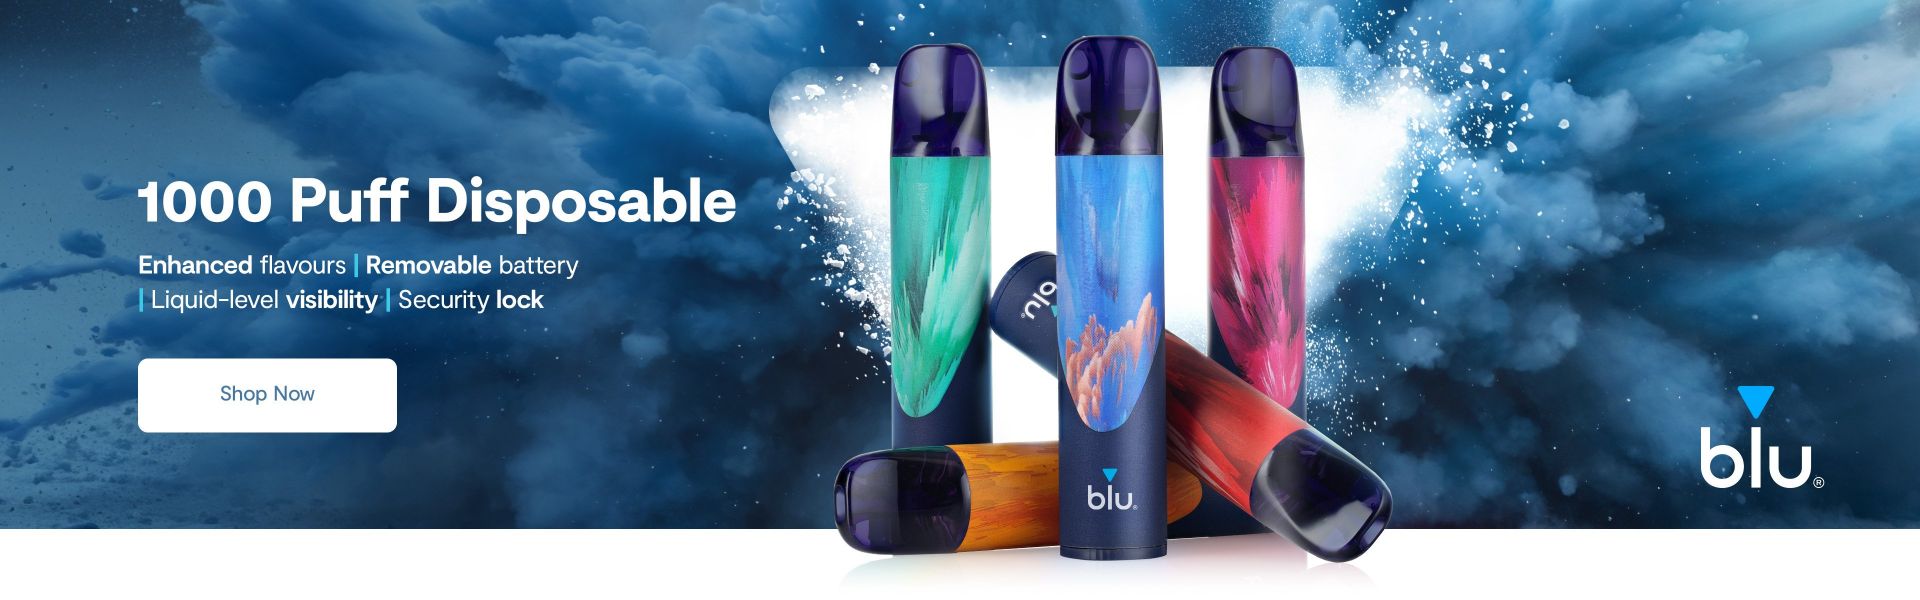 Blu Bar 1000 Puff Disposable